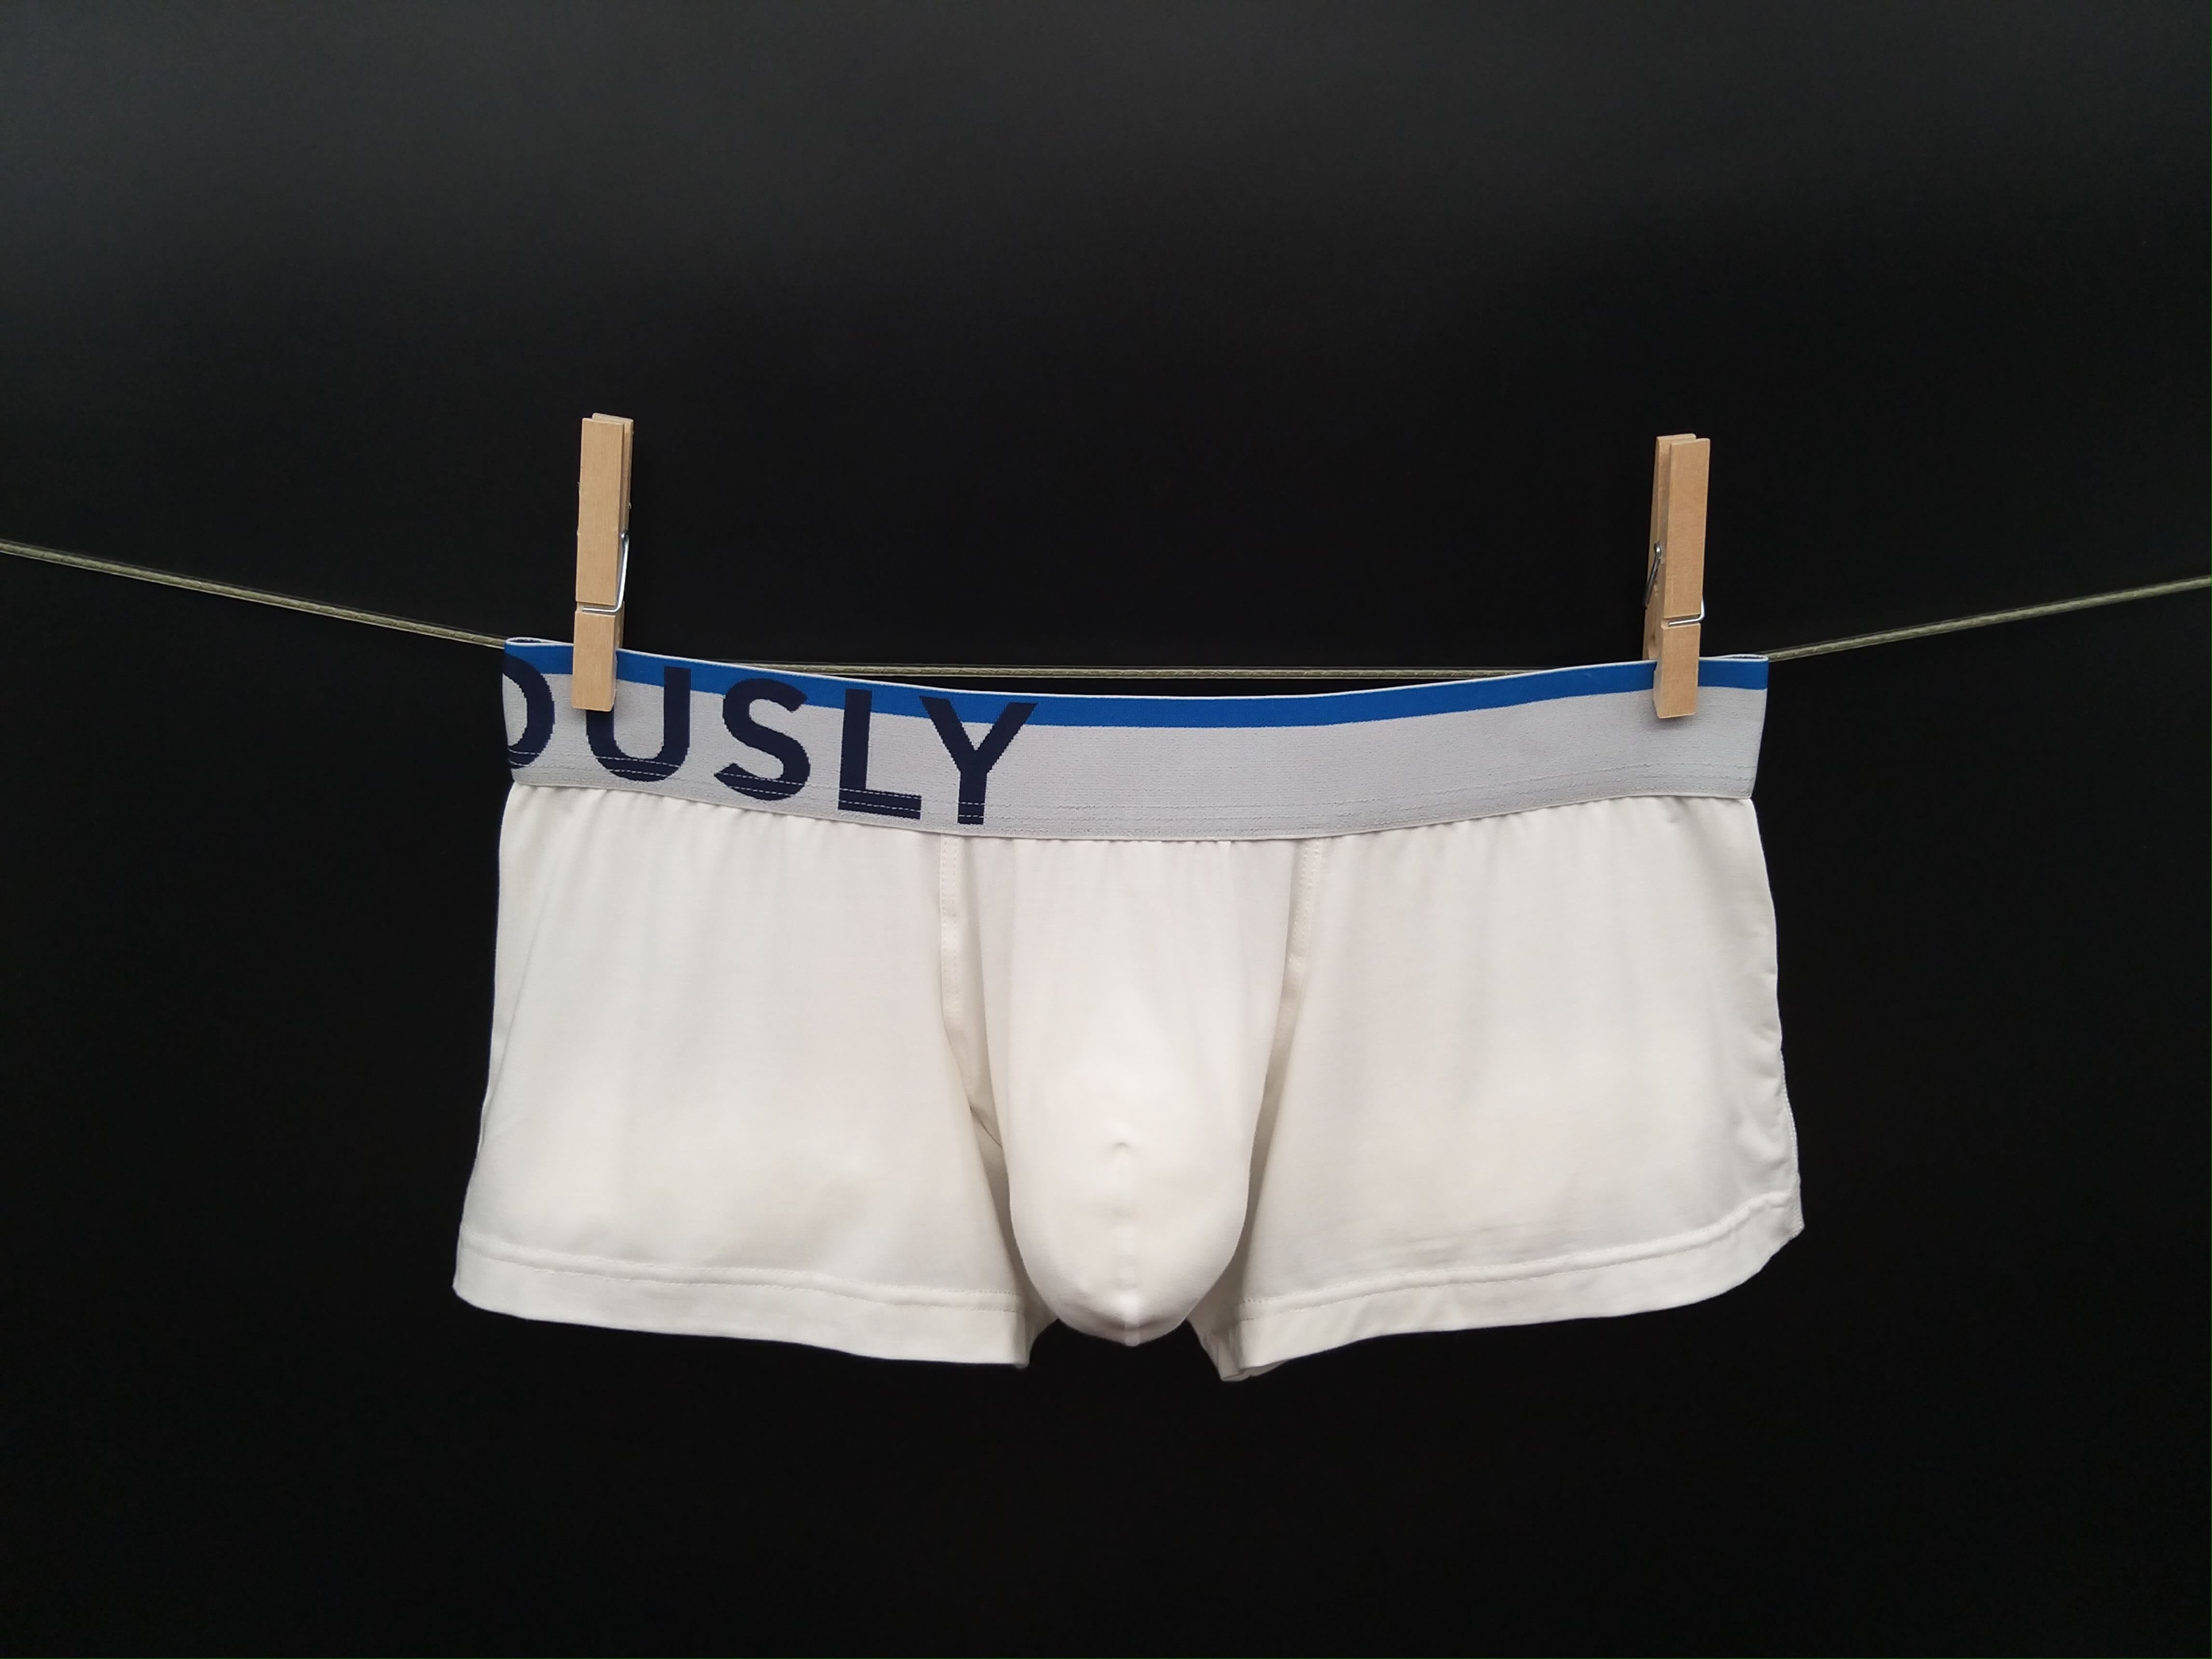 Underwear Plural: Why Is Underwear Plural?